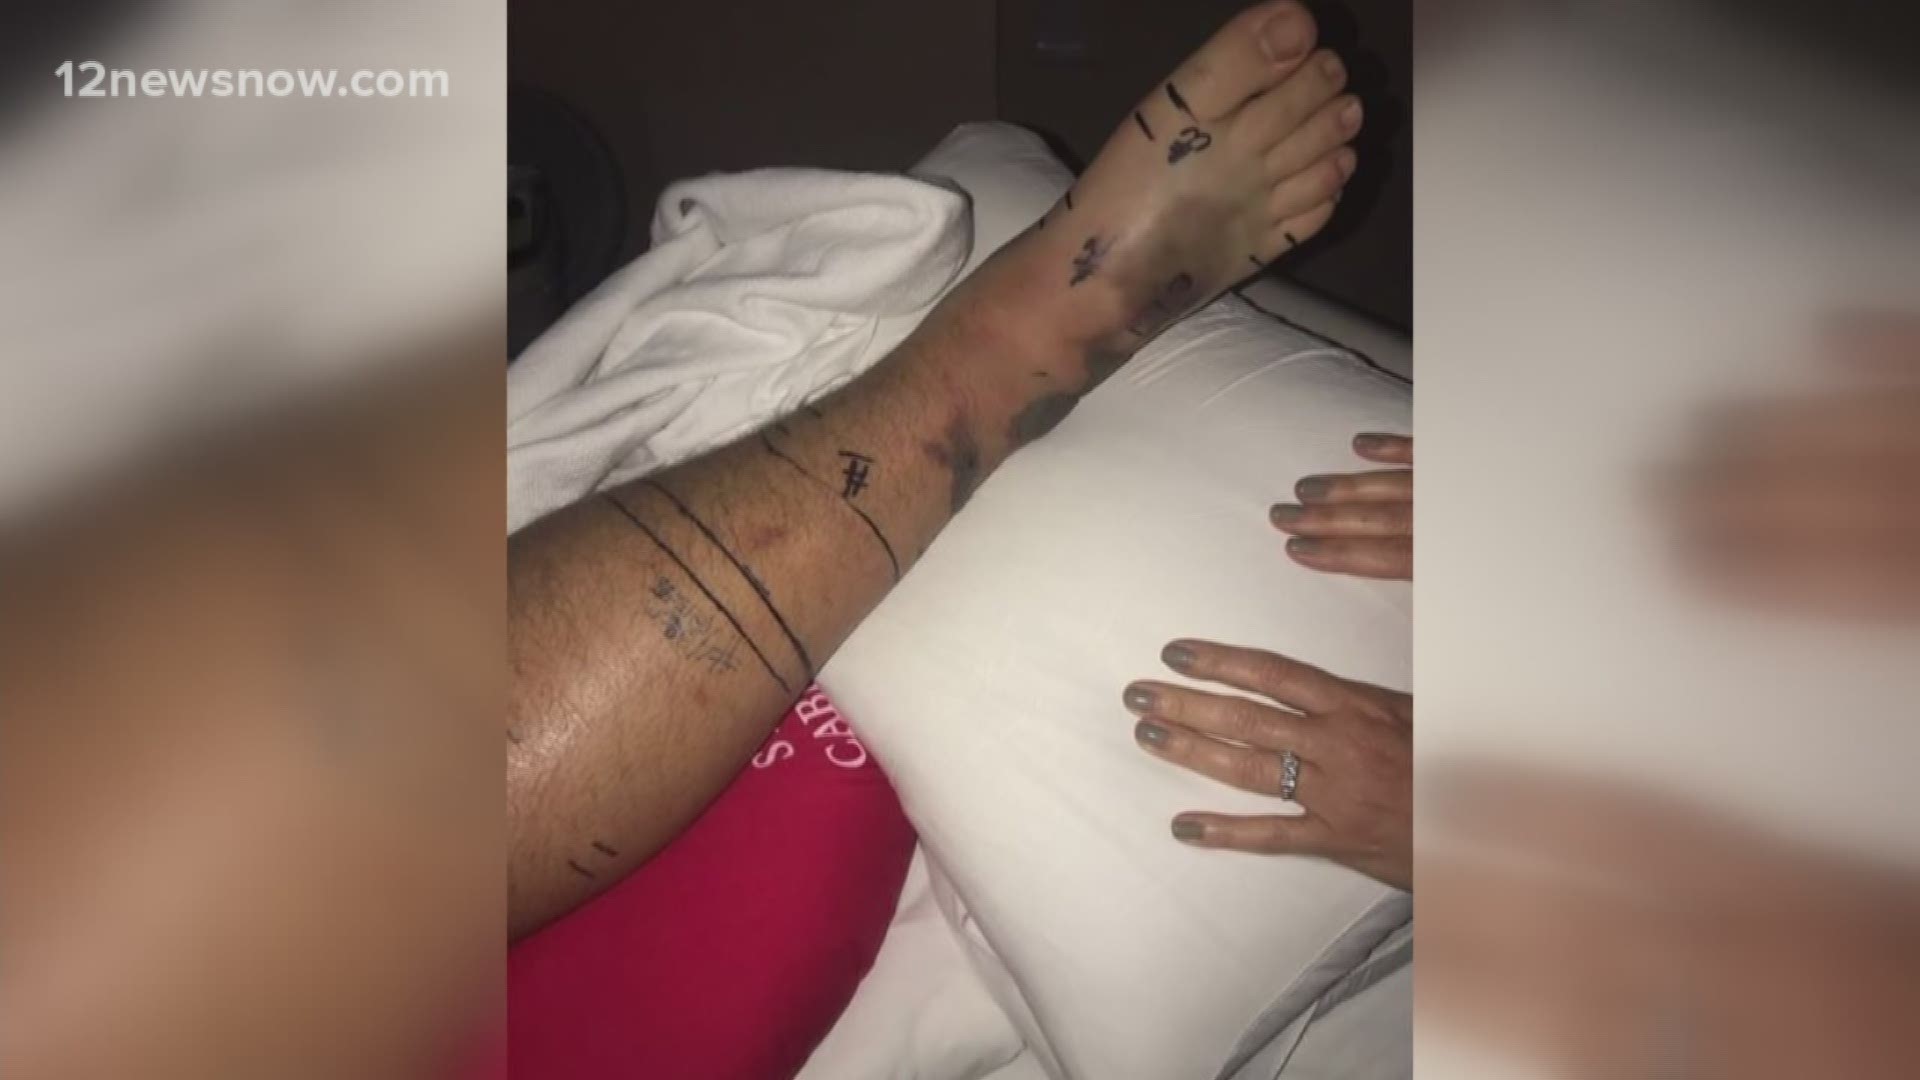 Snake bite leaves teen in the hospital